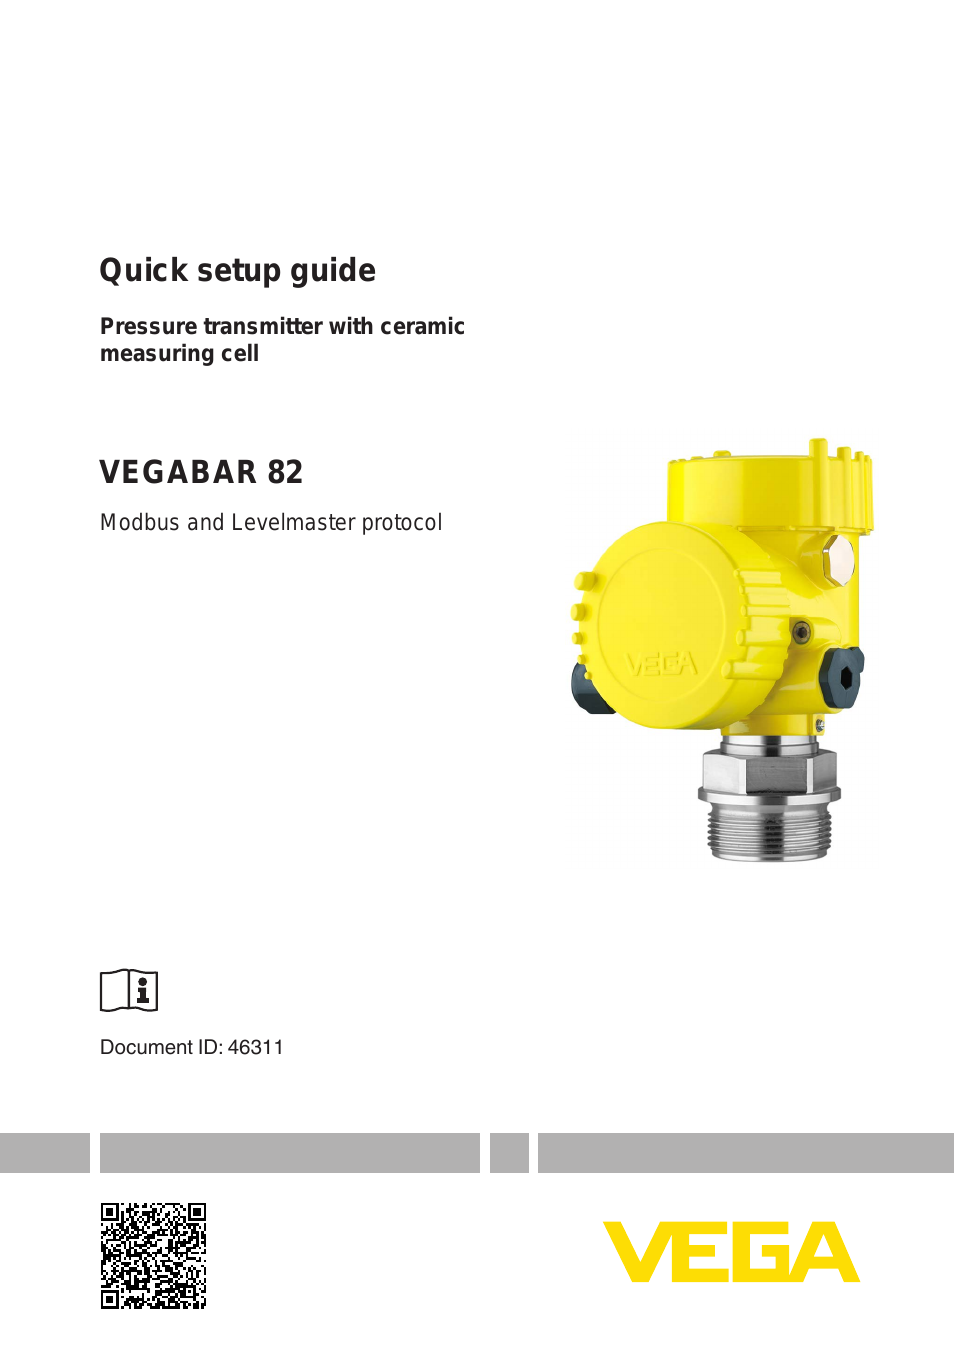 VEGABAR 82 Modbus and Levelmaster protocol - Quick setup guide